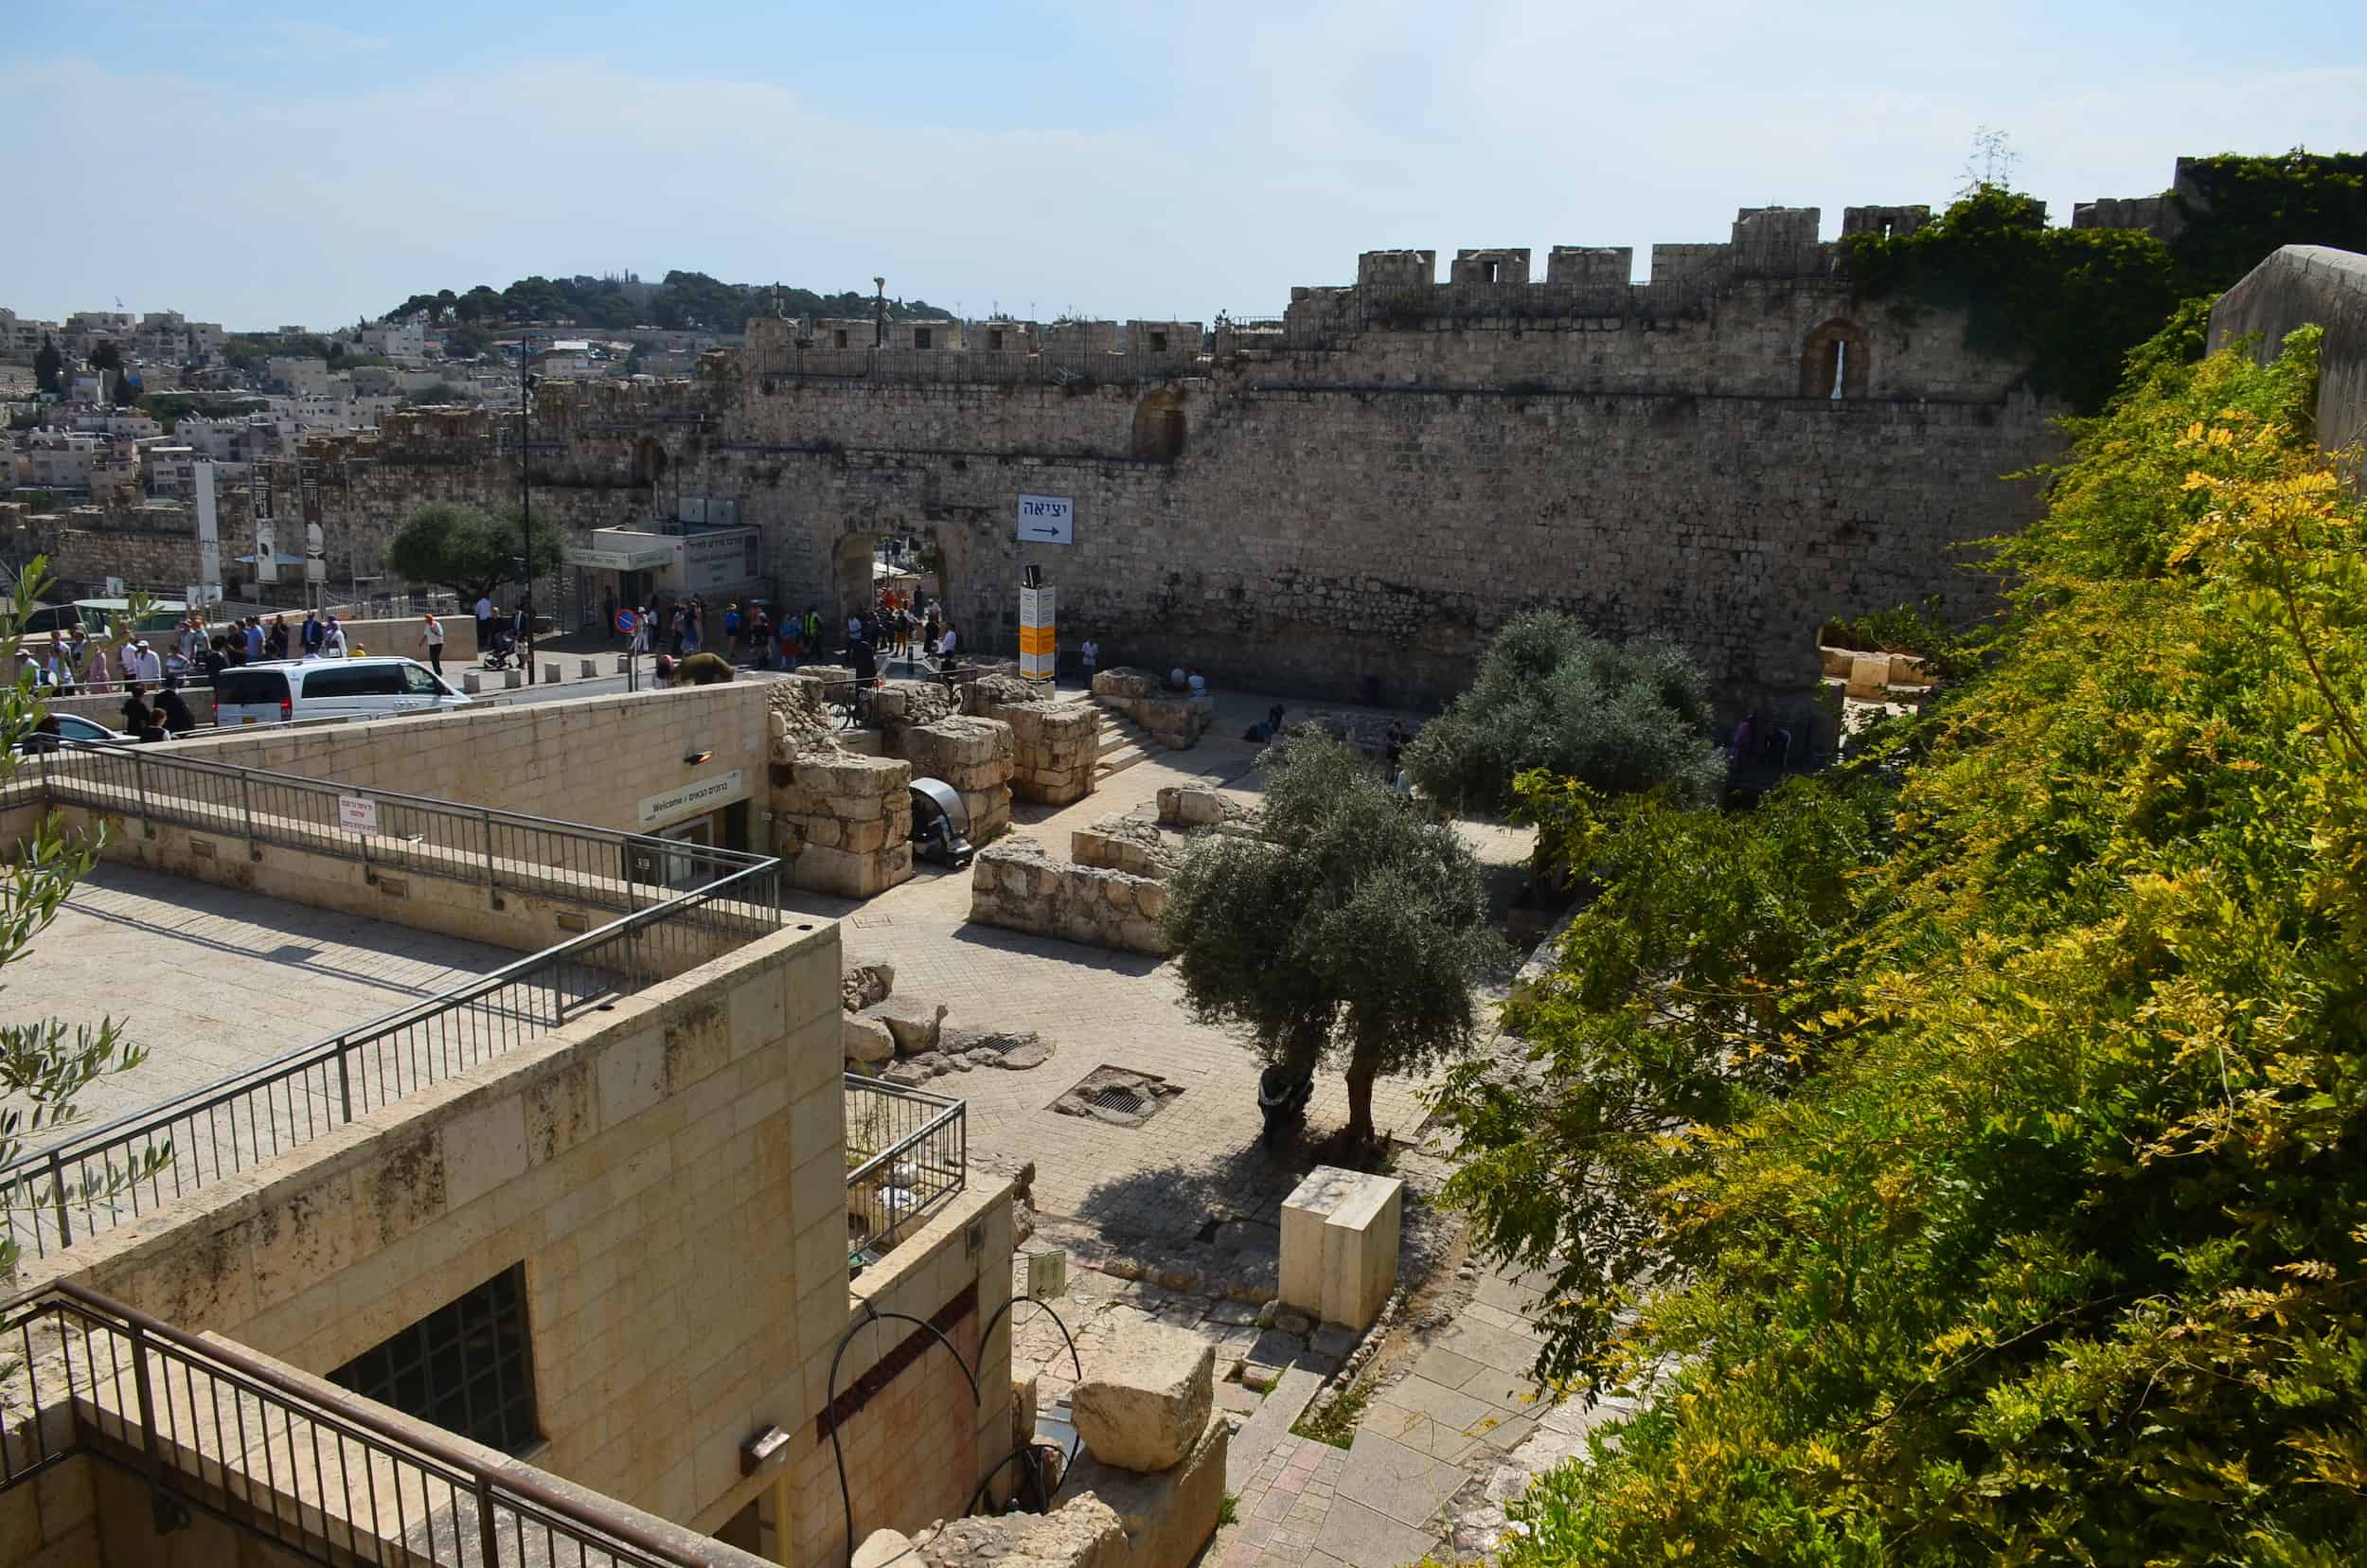 Jerusalem Archaeological Park in the Jewish Quarter of Jerusalem